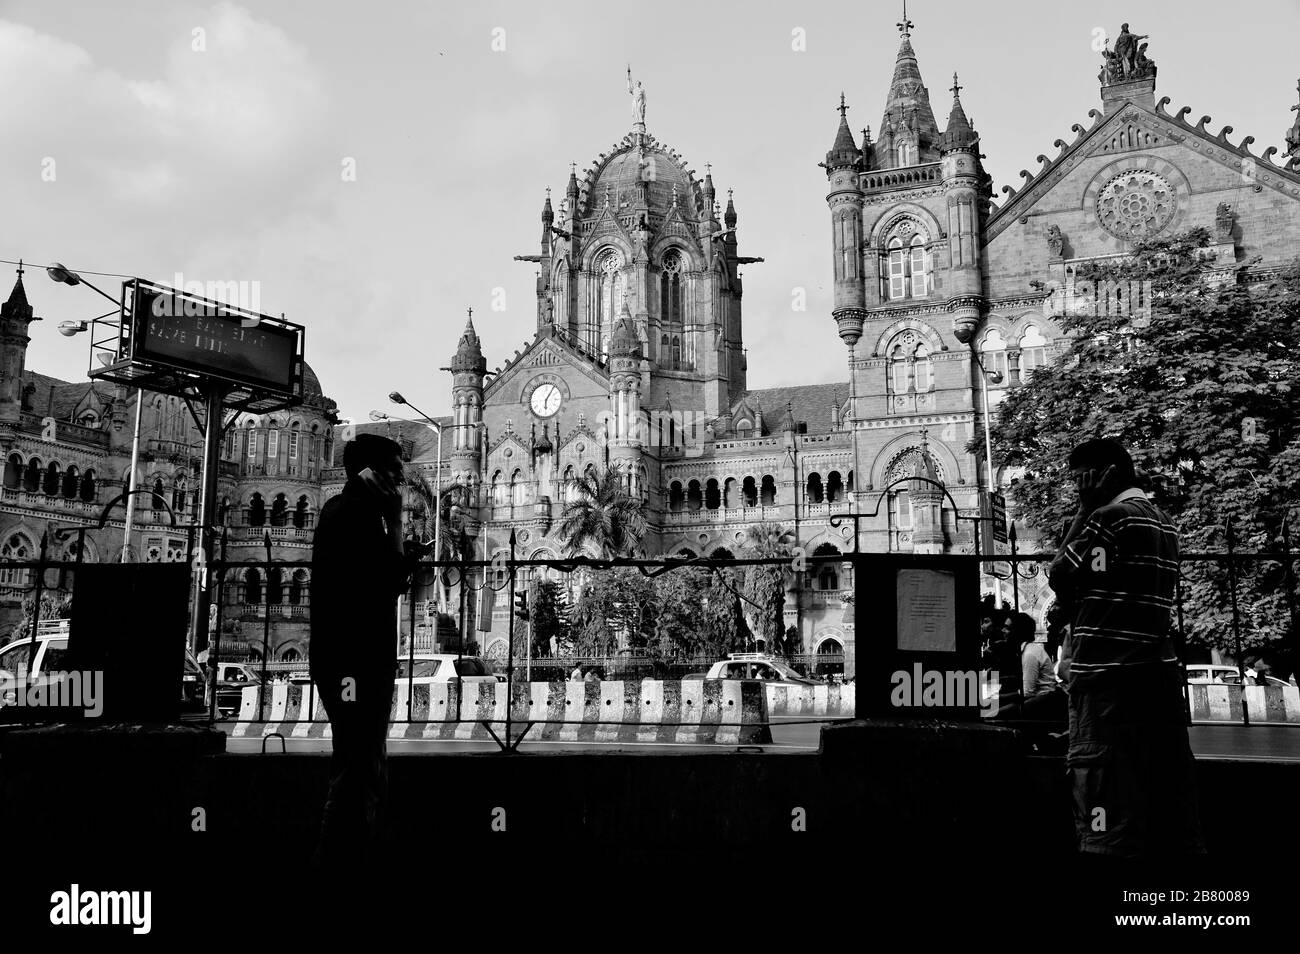 Hommes sur téléphones mobiles, Victoria Terminus VT, Chhatrapati Shivaji Maharaj Terminus CST, site du patrimoine mondial de l'UNESCO, Bori Bunder, Bombay, Inde Banque D'Images